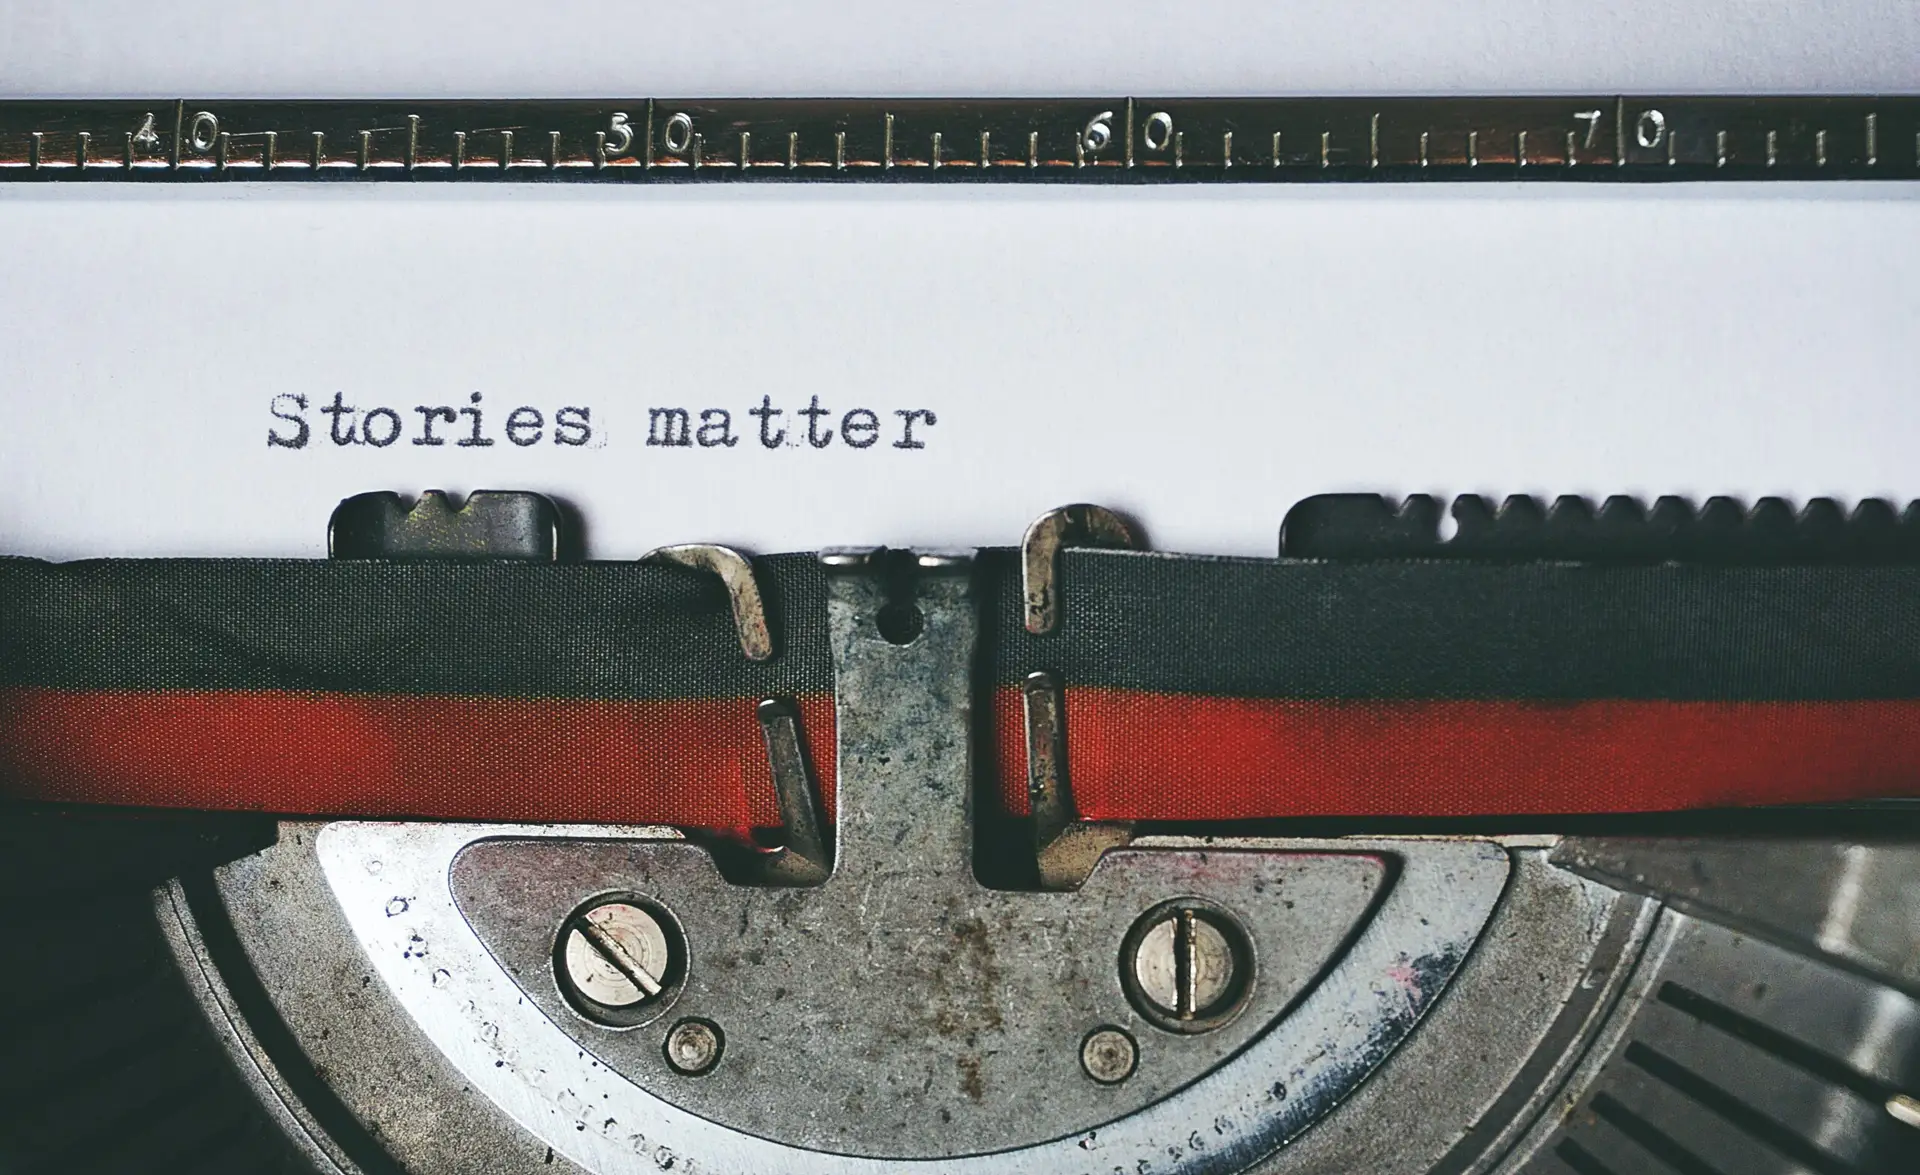 Schreibmaschine mit dem getippten Text " Stories matter"